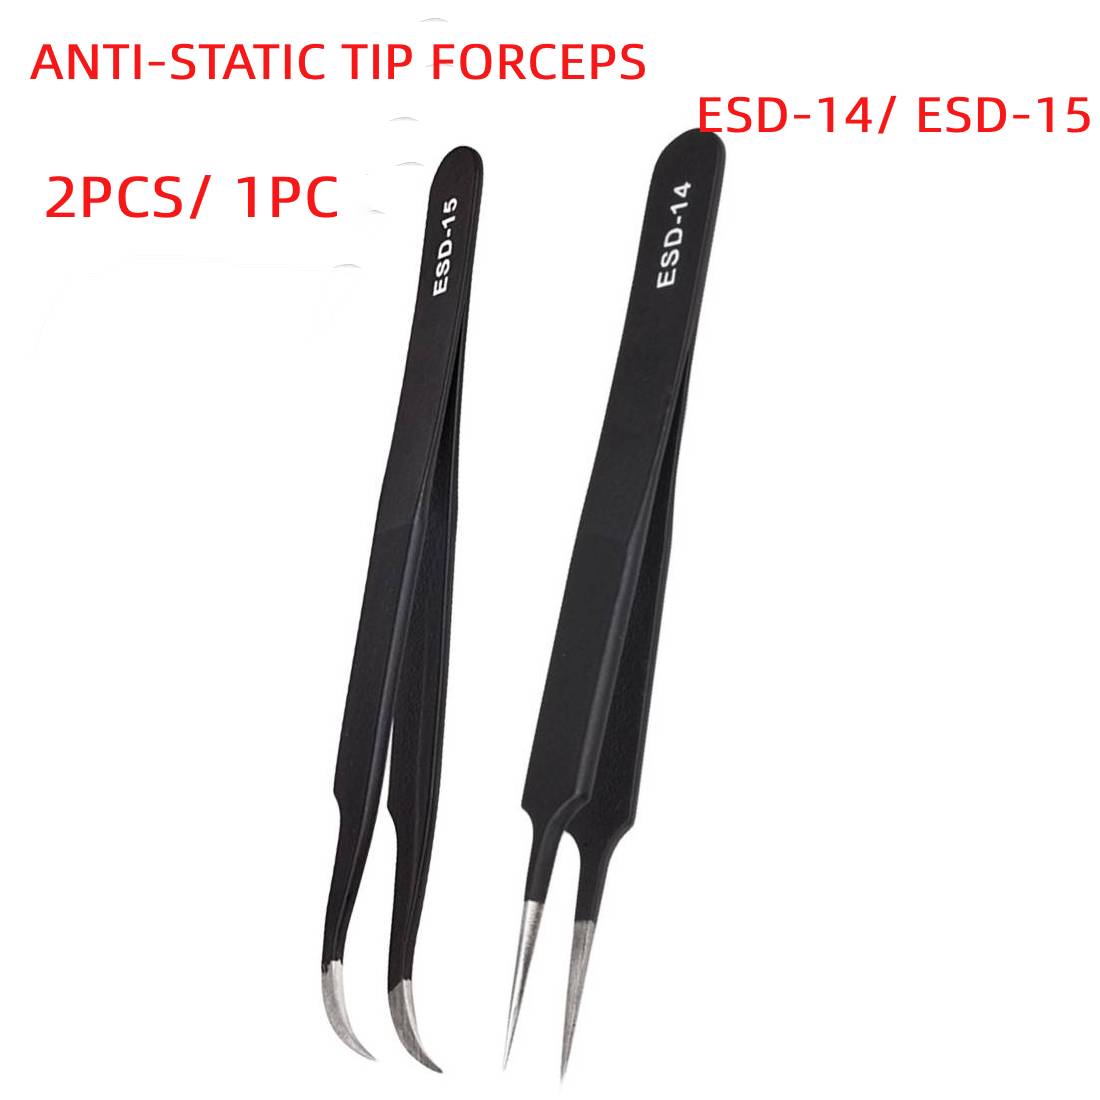 Anti-Statische Gebogen Rechte Tip Pincet Precisie Solderen Pincet Set Elektronische Esd Pincet Tool 2 Stuks/1Pc ESD-14 ESD-15